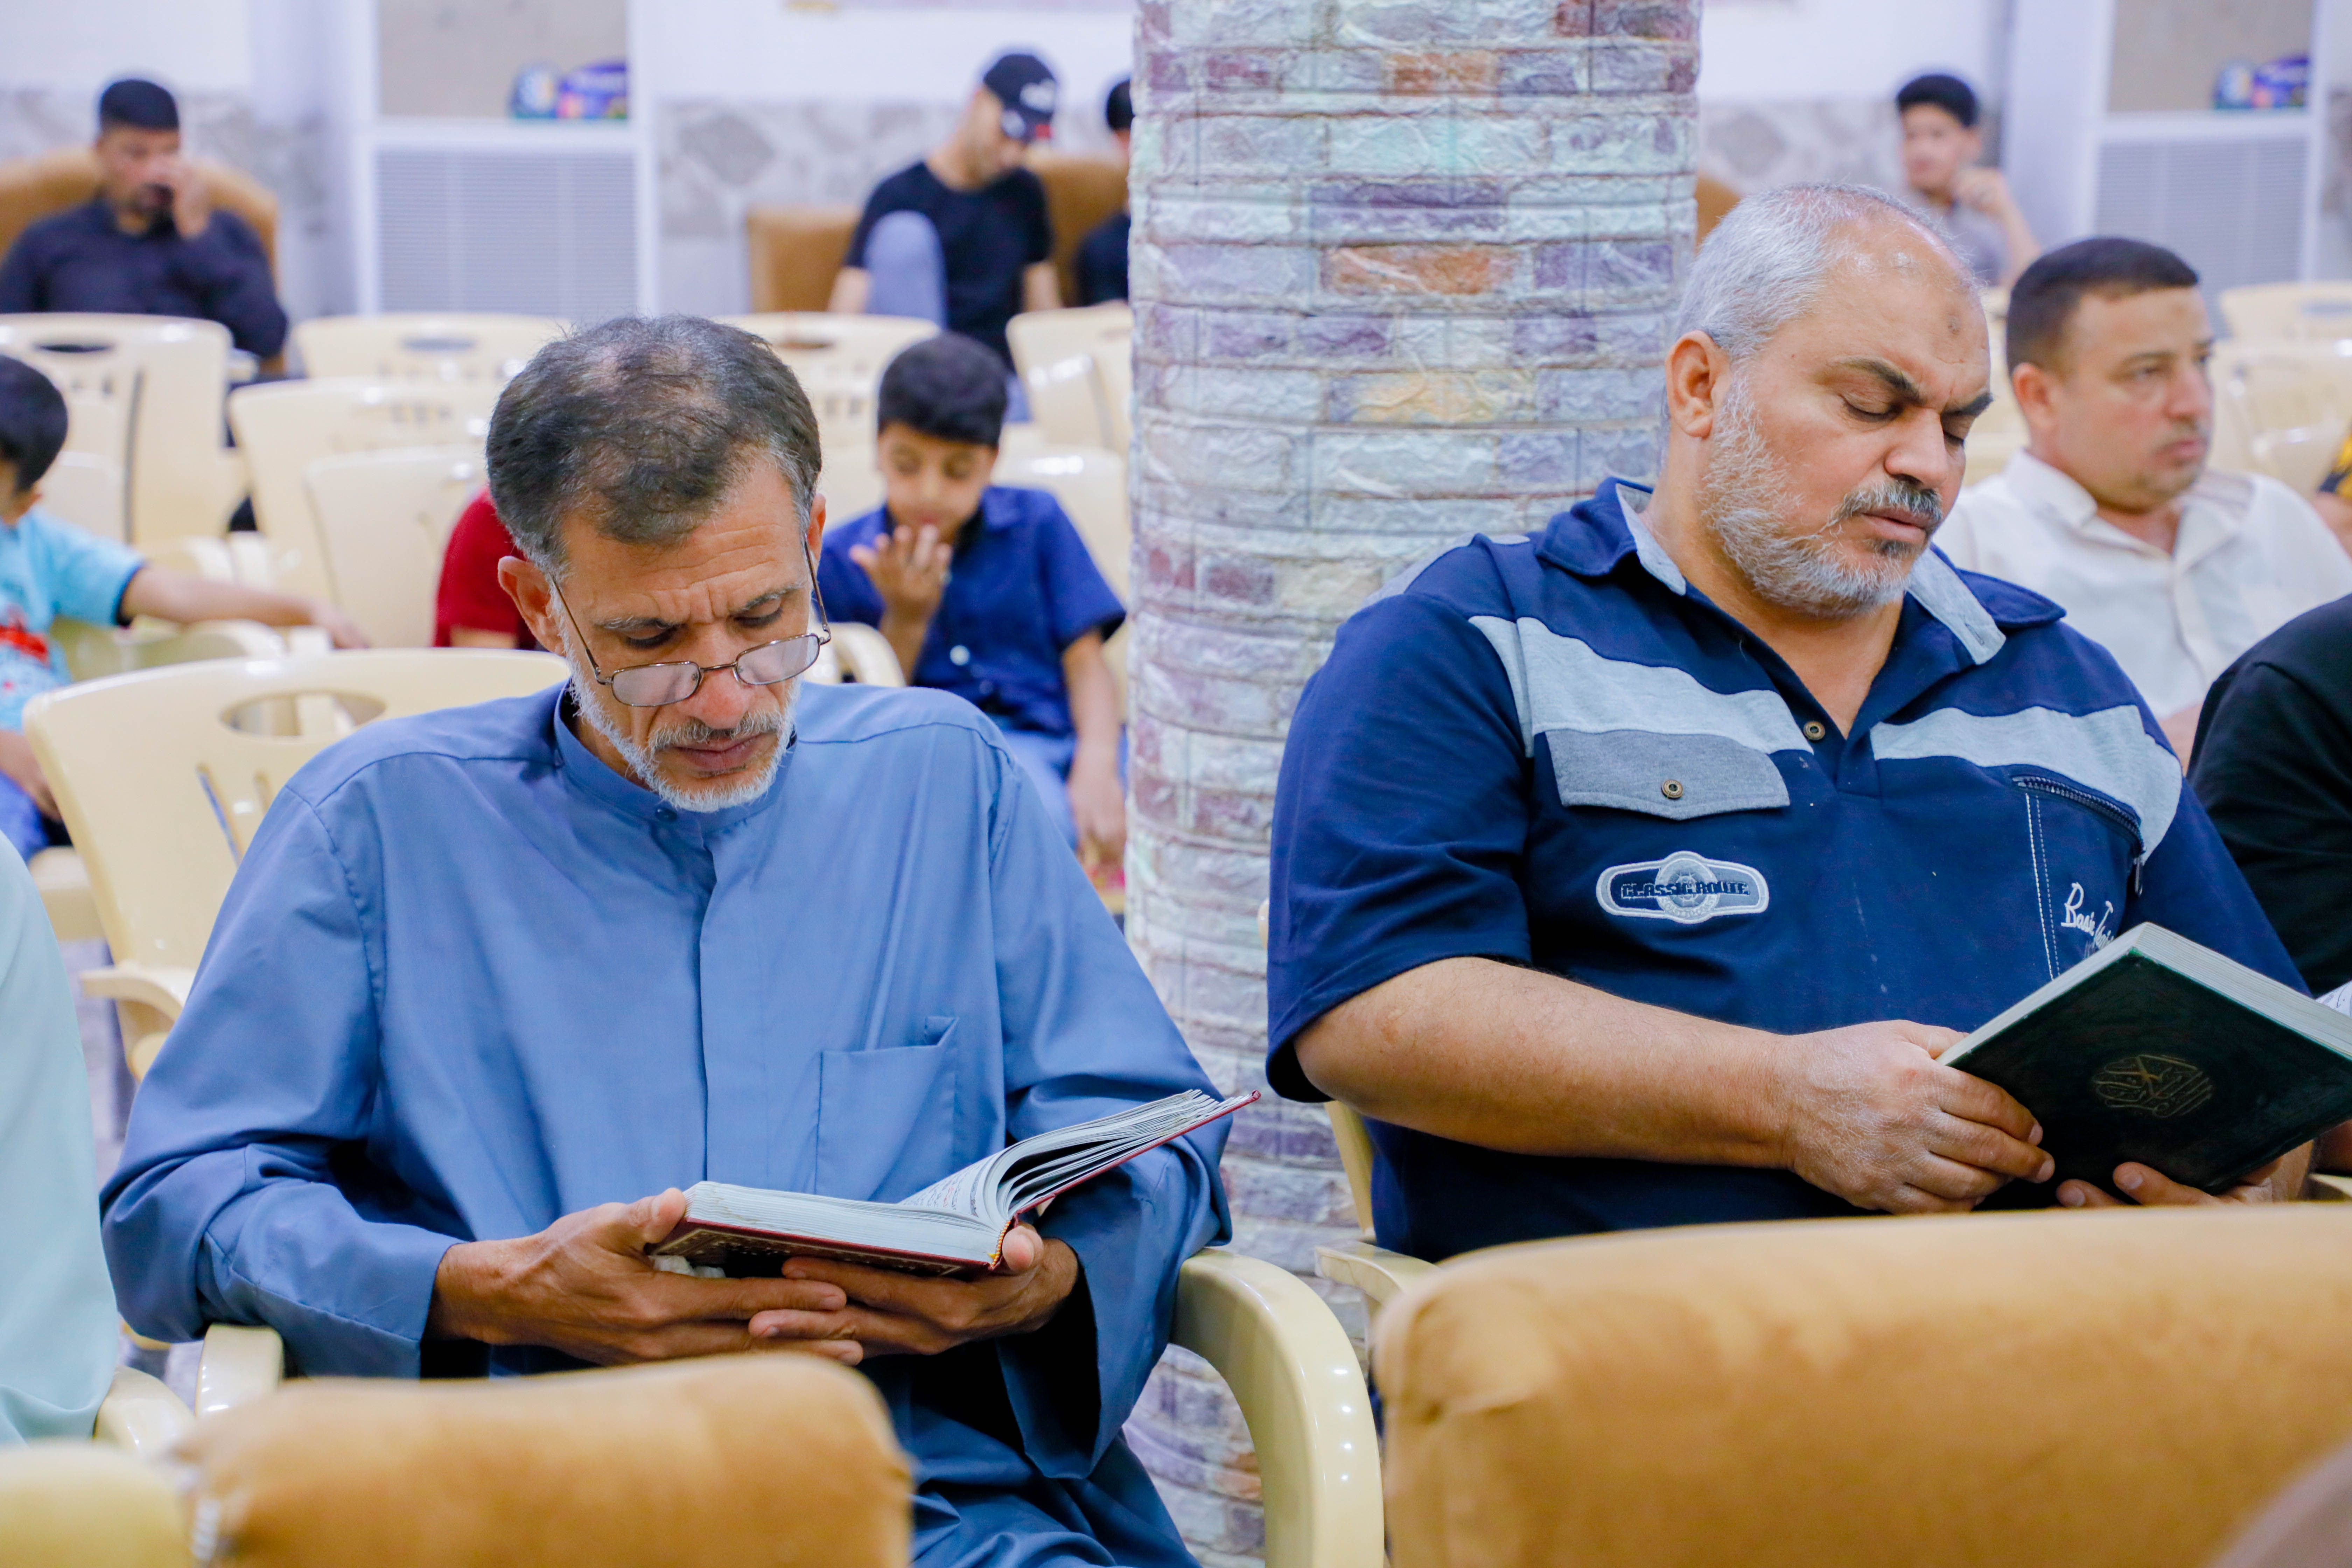 فرع المعهد في قضاء الهندية يقيم محفلًا قرآنيًا بمشاركة نخبة من القرّاء